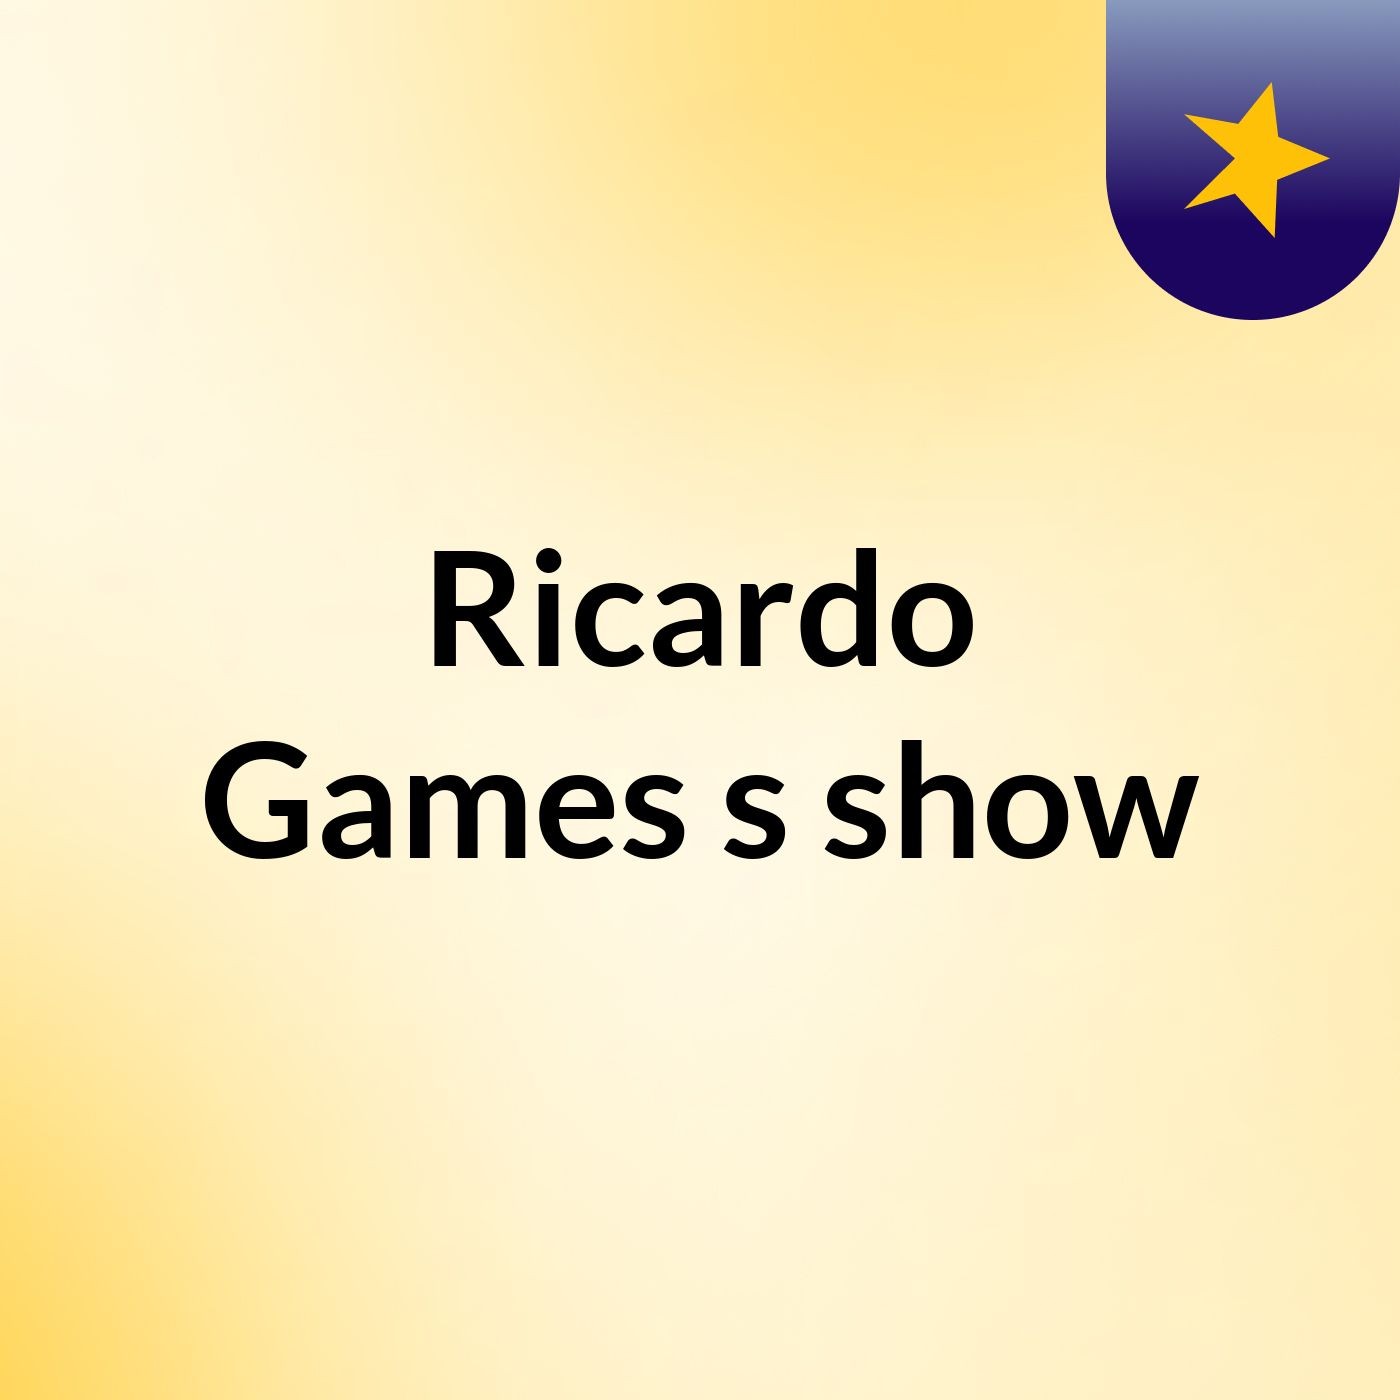 Ricardo Games's show